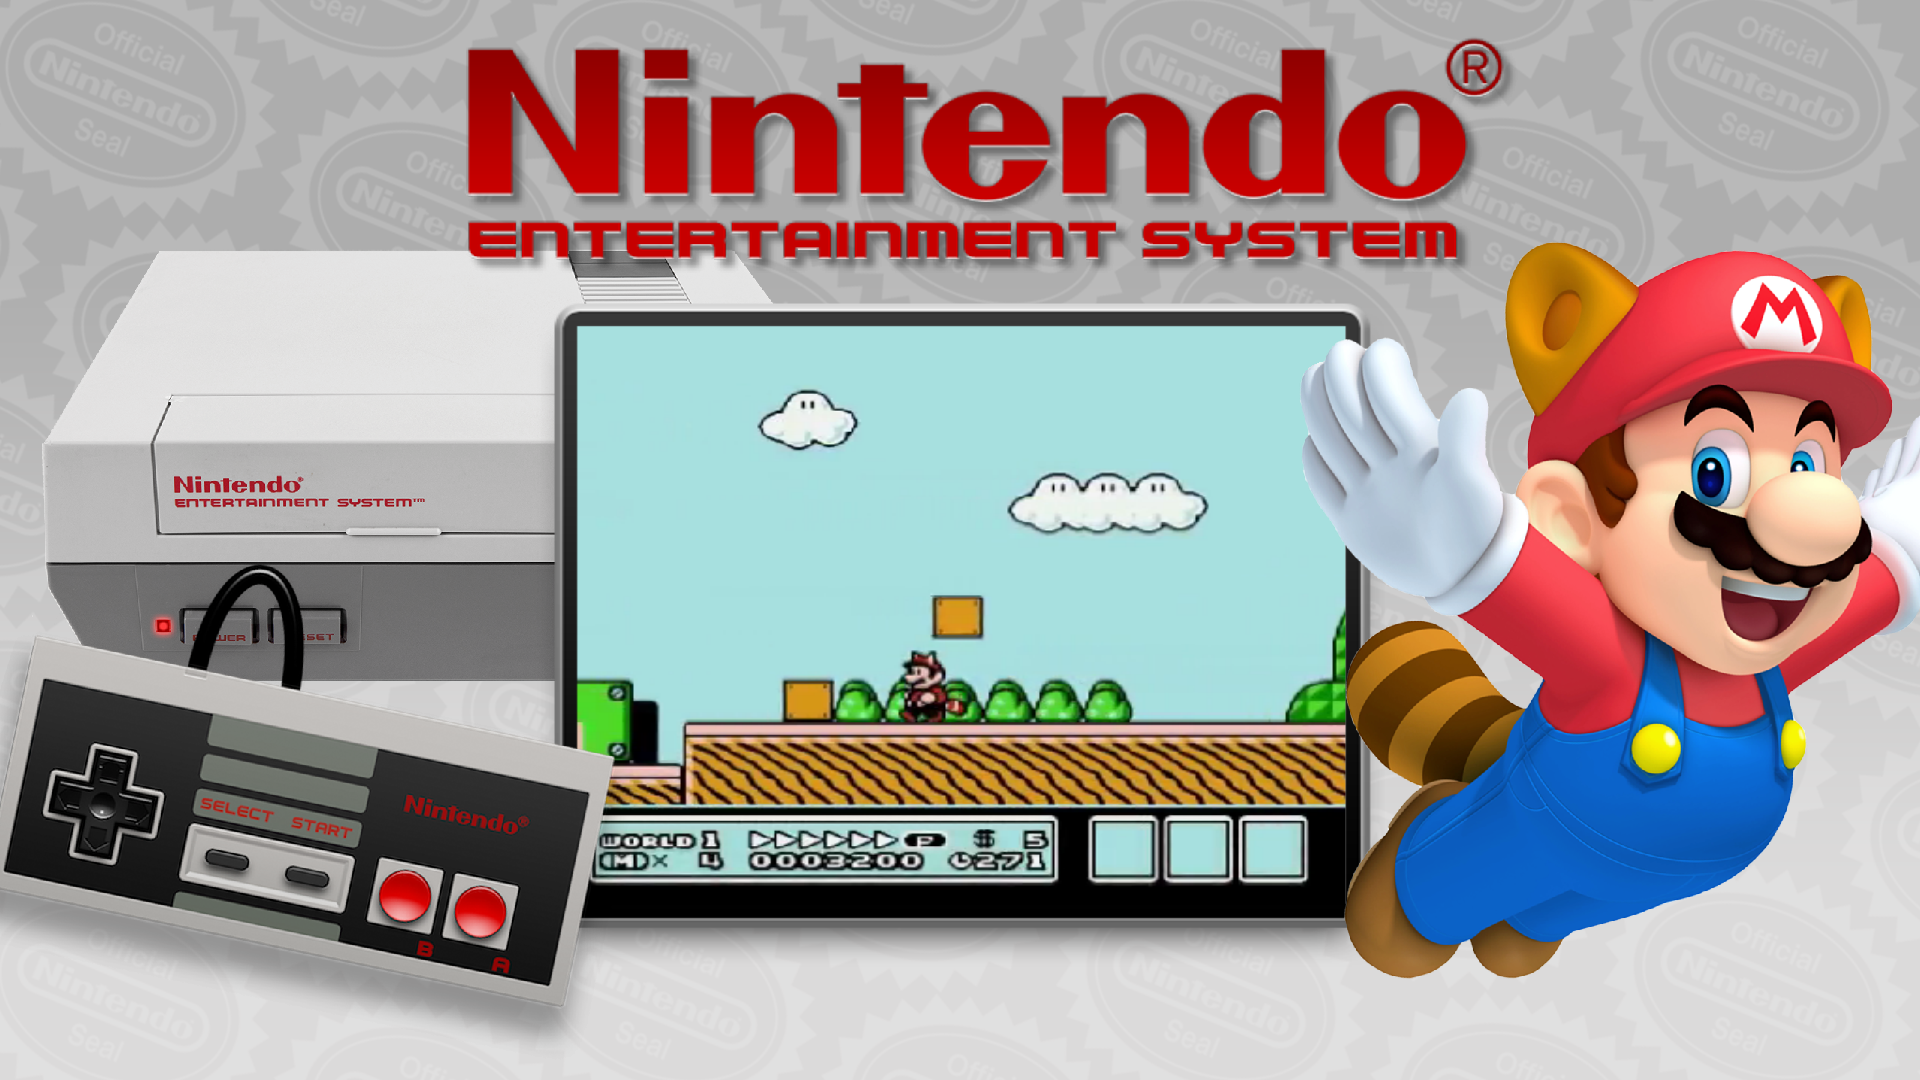 Нинтендо NES 1985. Нинтендо Entertainment System. Nintendo Entertainment System (NES). Супер Марио 128. Nintendo home